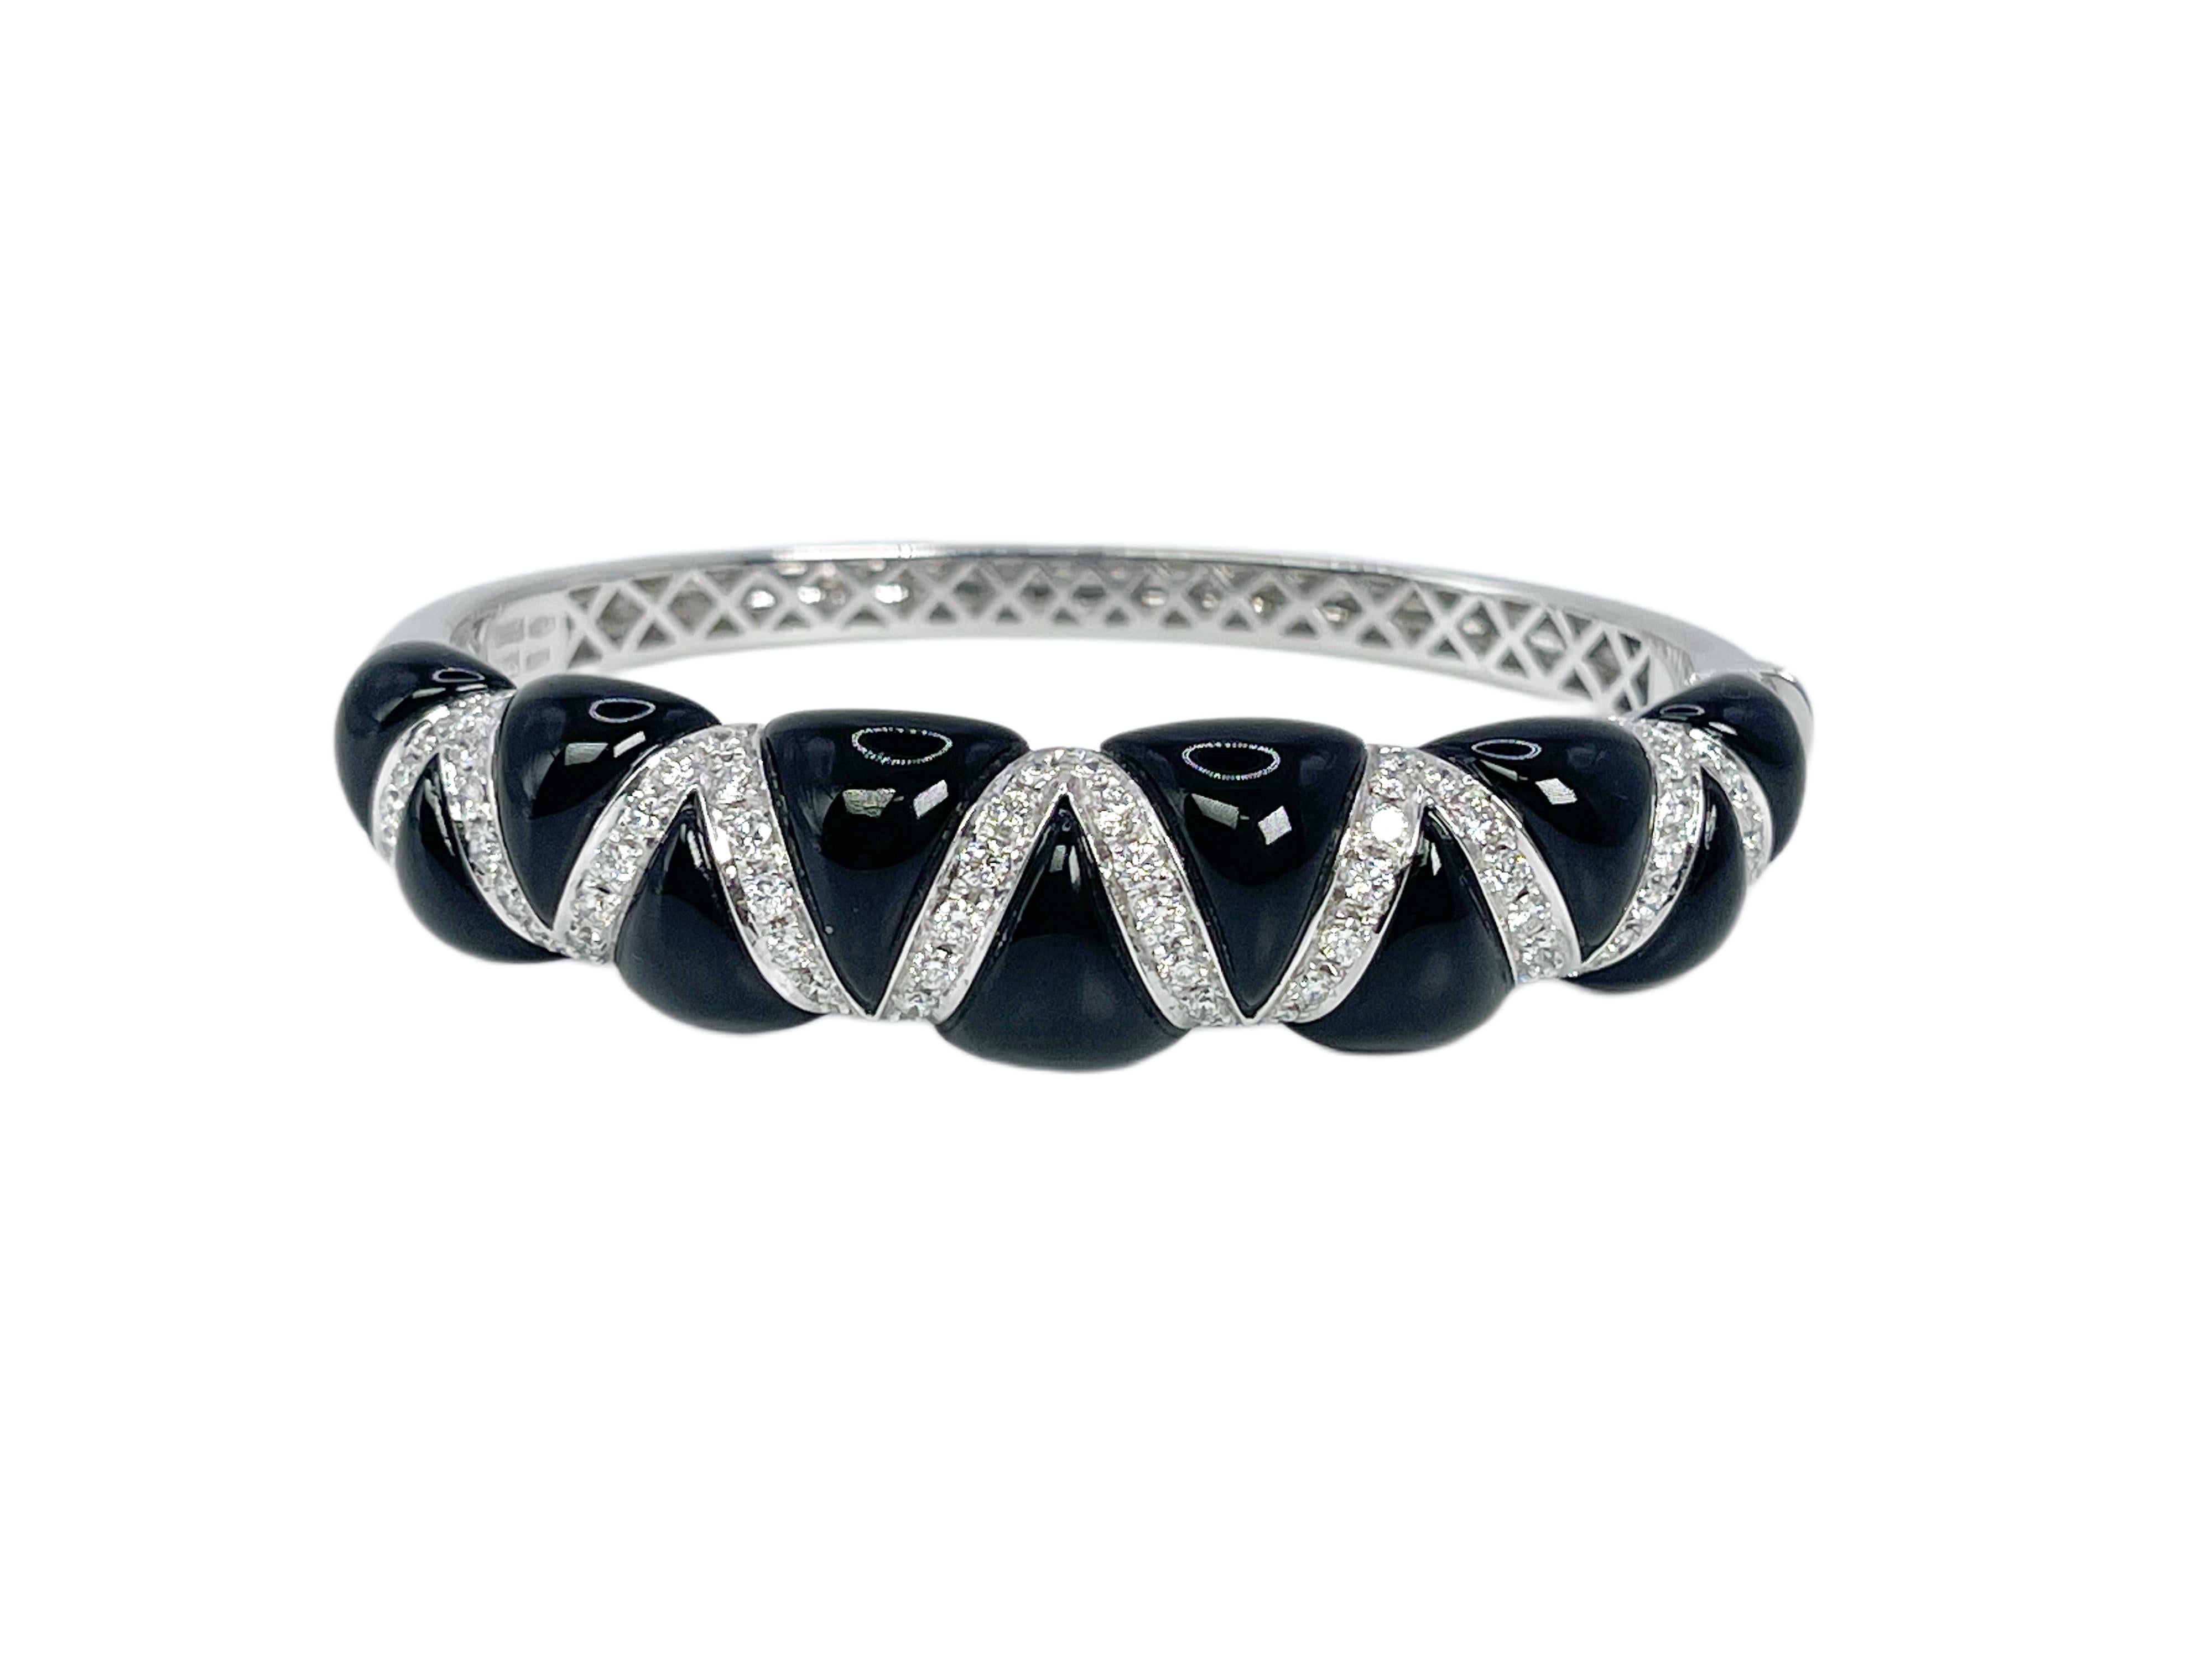 
Important bracelet bangle en onyx et diamants réalisé avec des pièces d'onyx taillées sur mesure et des diamants VS. La pièce est finie en or blanc 18KT par le designer Chantecler.

POIDS EN GRAMME : 40.82gr
OR : or blanc 18KT

DIAMANT(S)